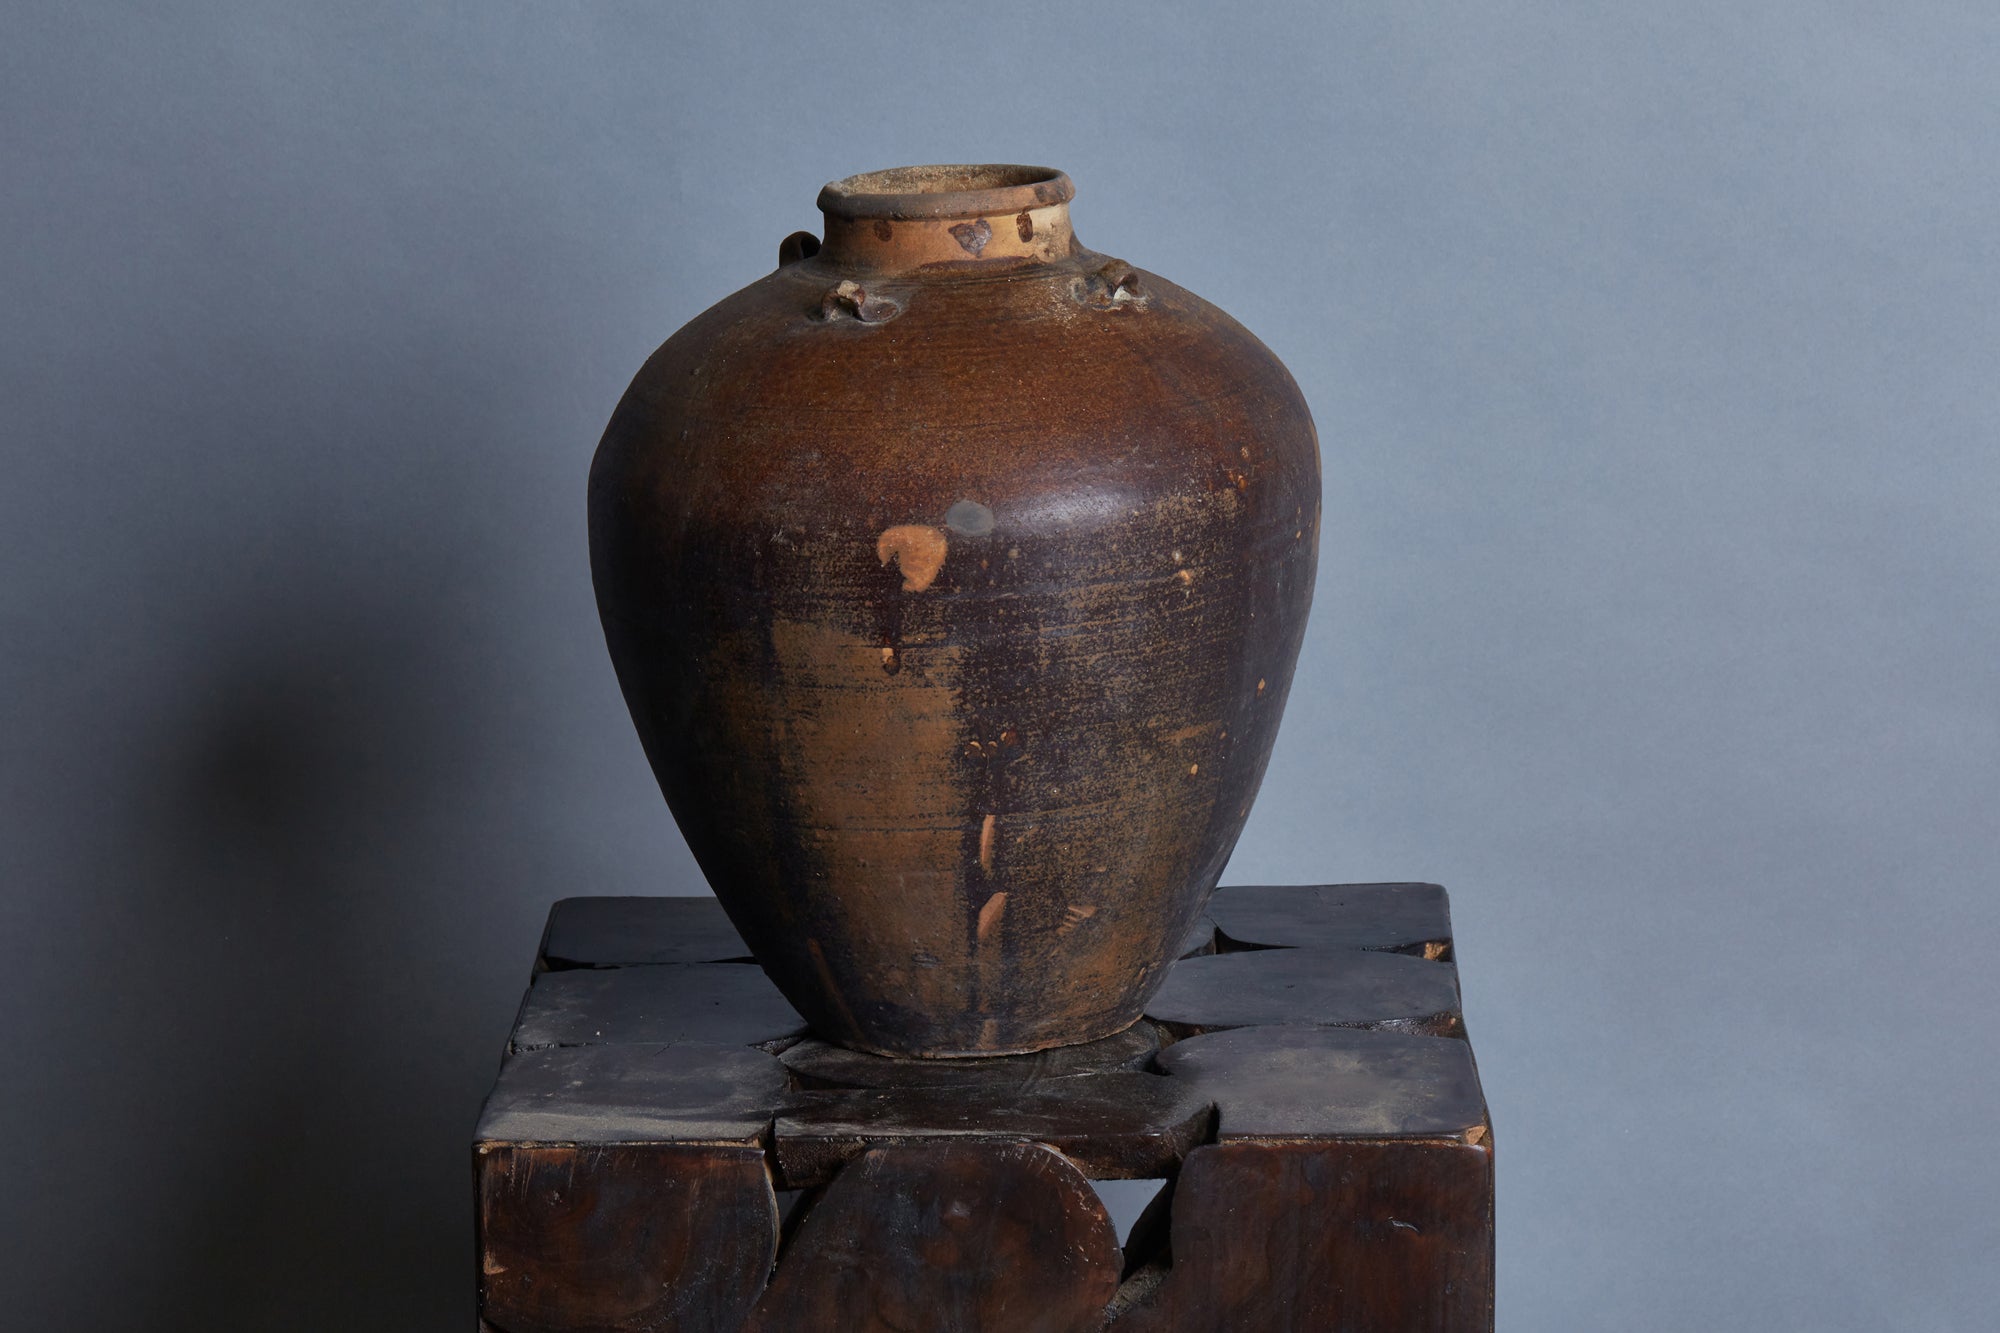 15th Century Tsung Dynasty Shipwreck Jar Found off the Coast of Java